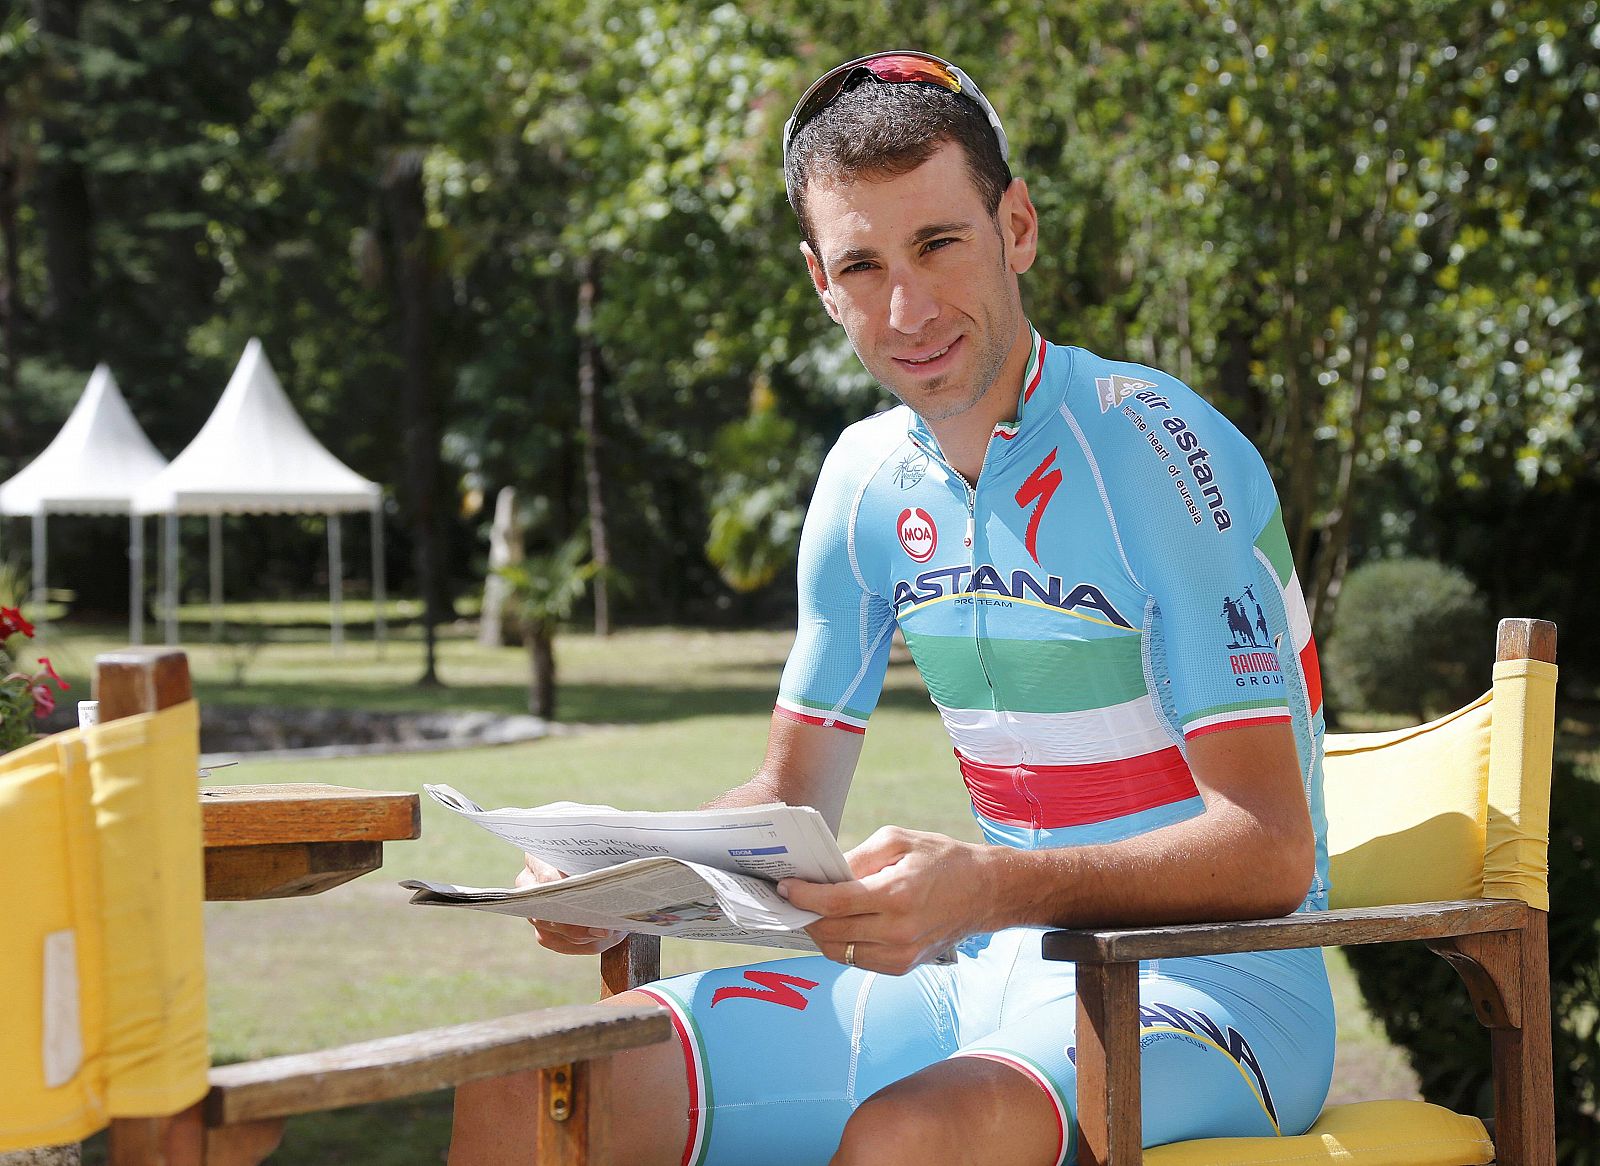 El líder del Tour, Vincenzo Nibali, en el día de descanso